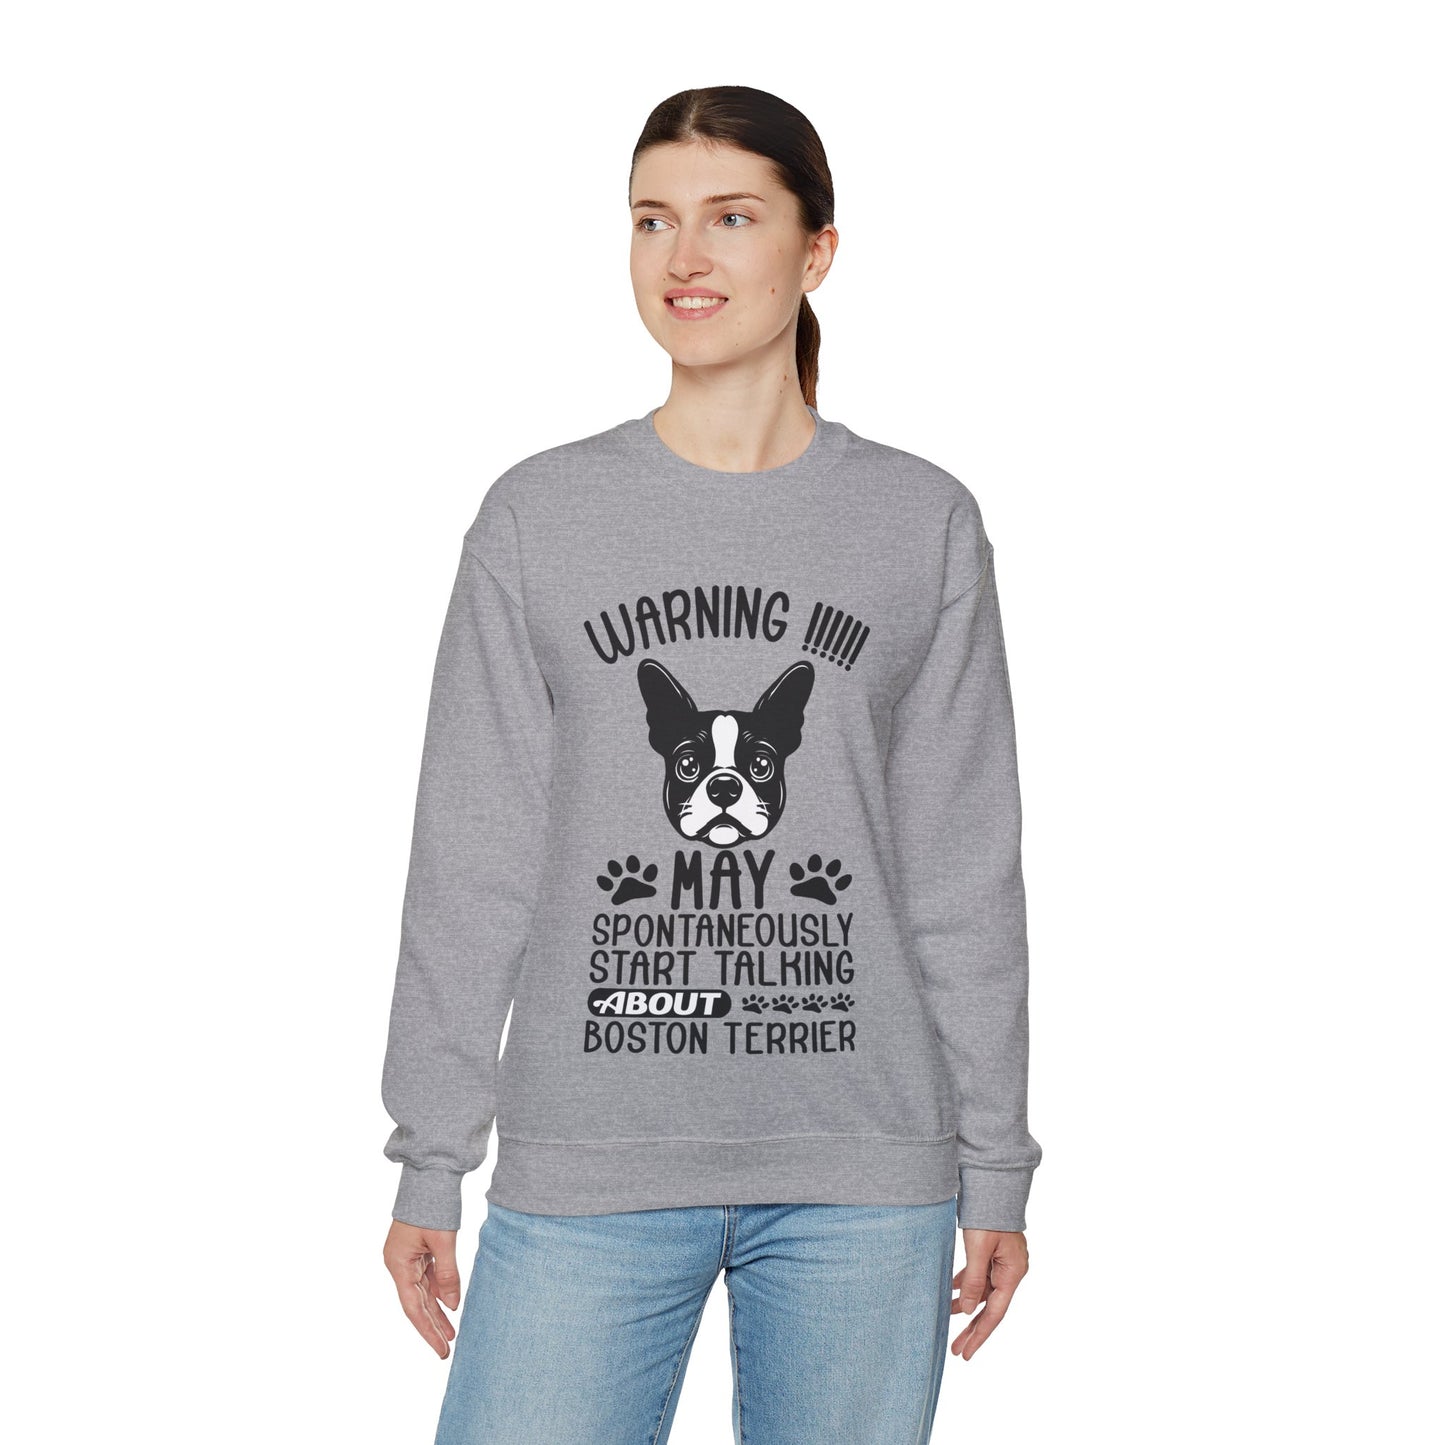 Bullseye  - Unisex Sweatshirt for Boston Terrier lovers